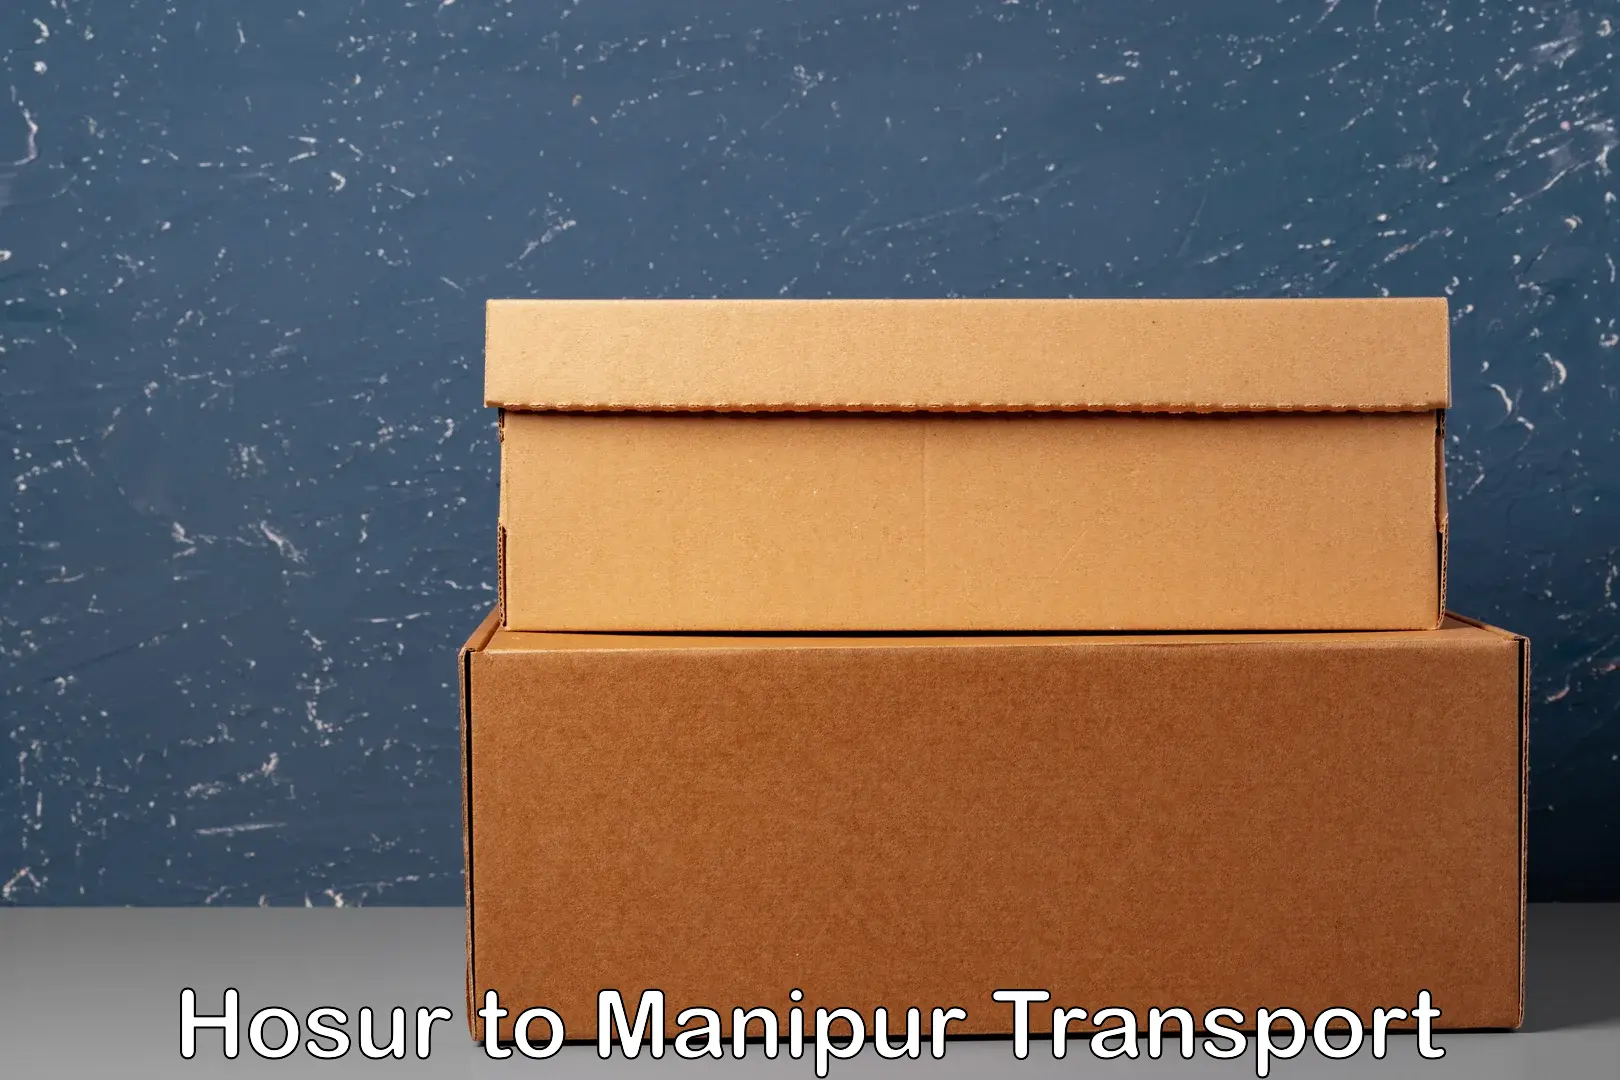 Door to door transport services Hosur to Manipur